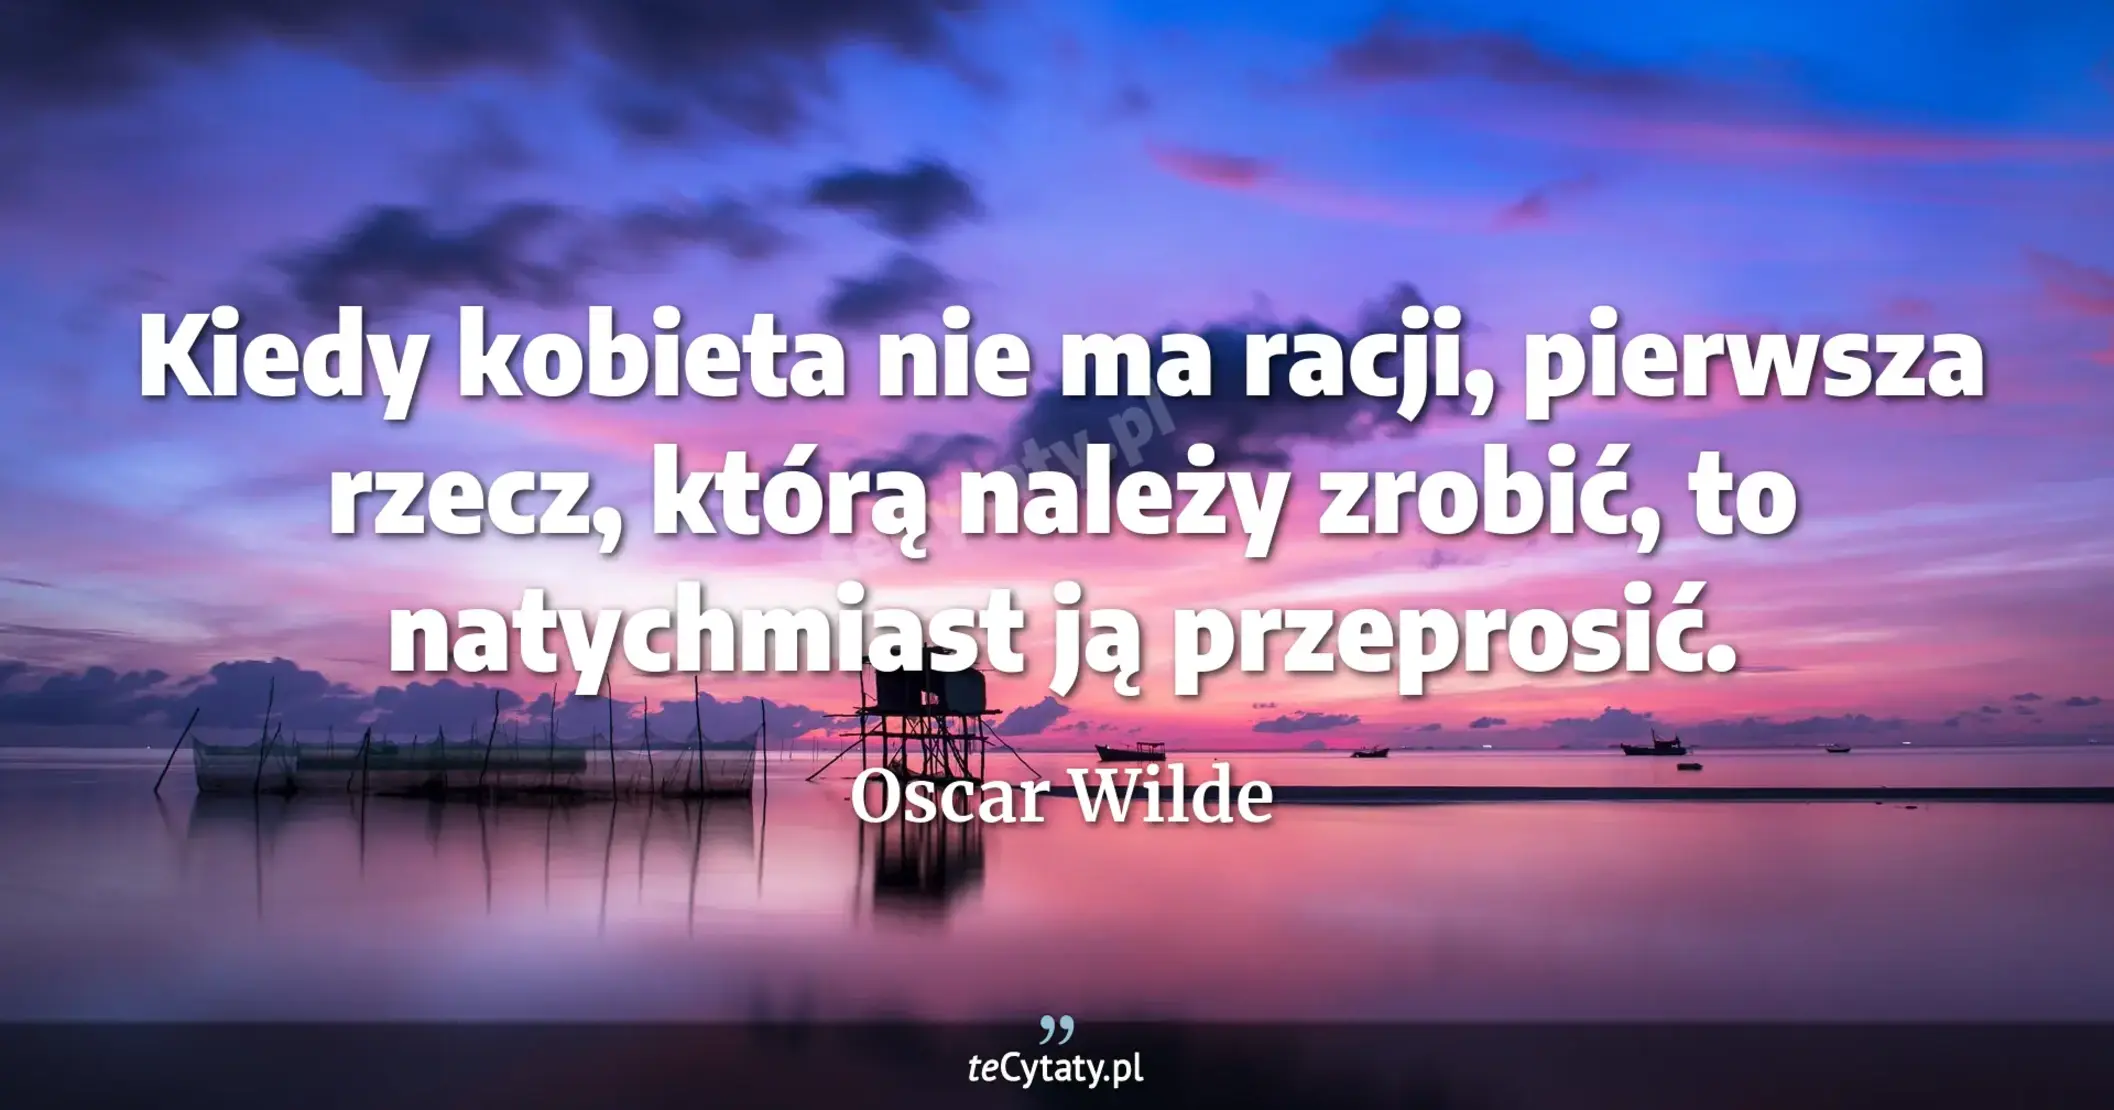 Kiedy kobieta nie ma racji, pierwsza rzecz, którą należy zrobić, to natychmiast ją przeprosić. - Oscar Wilde